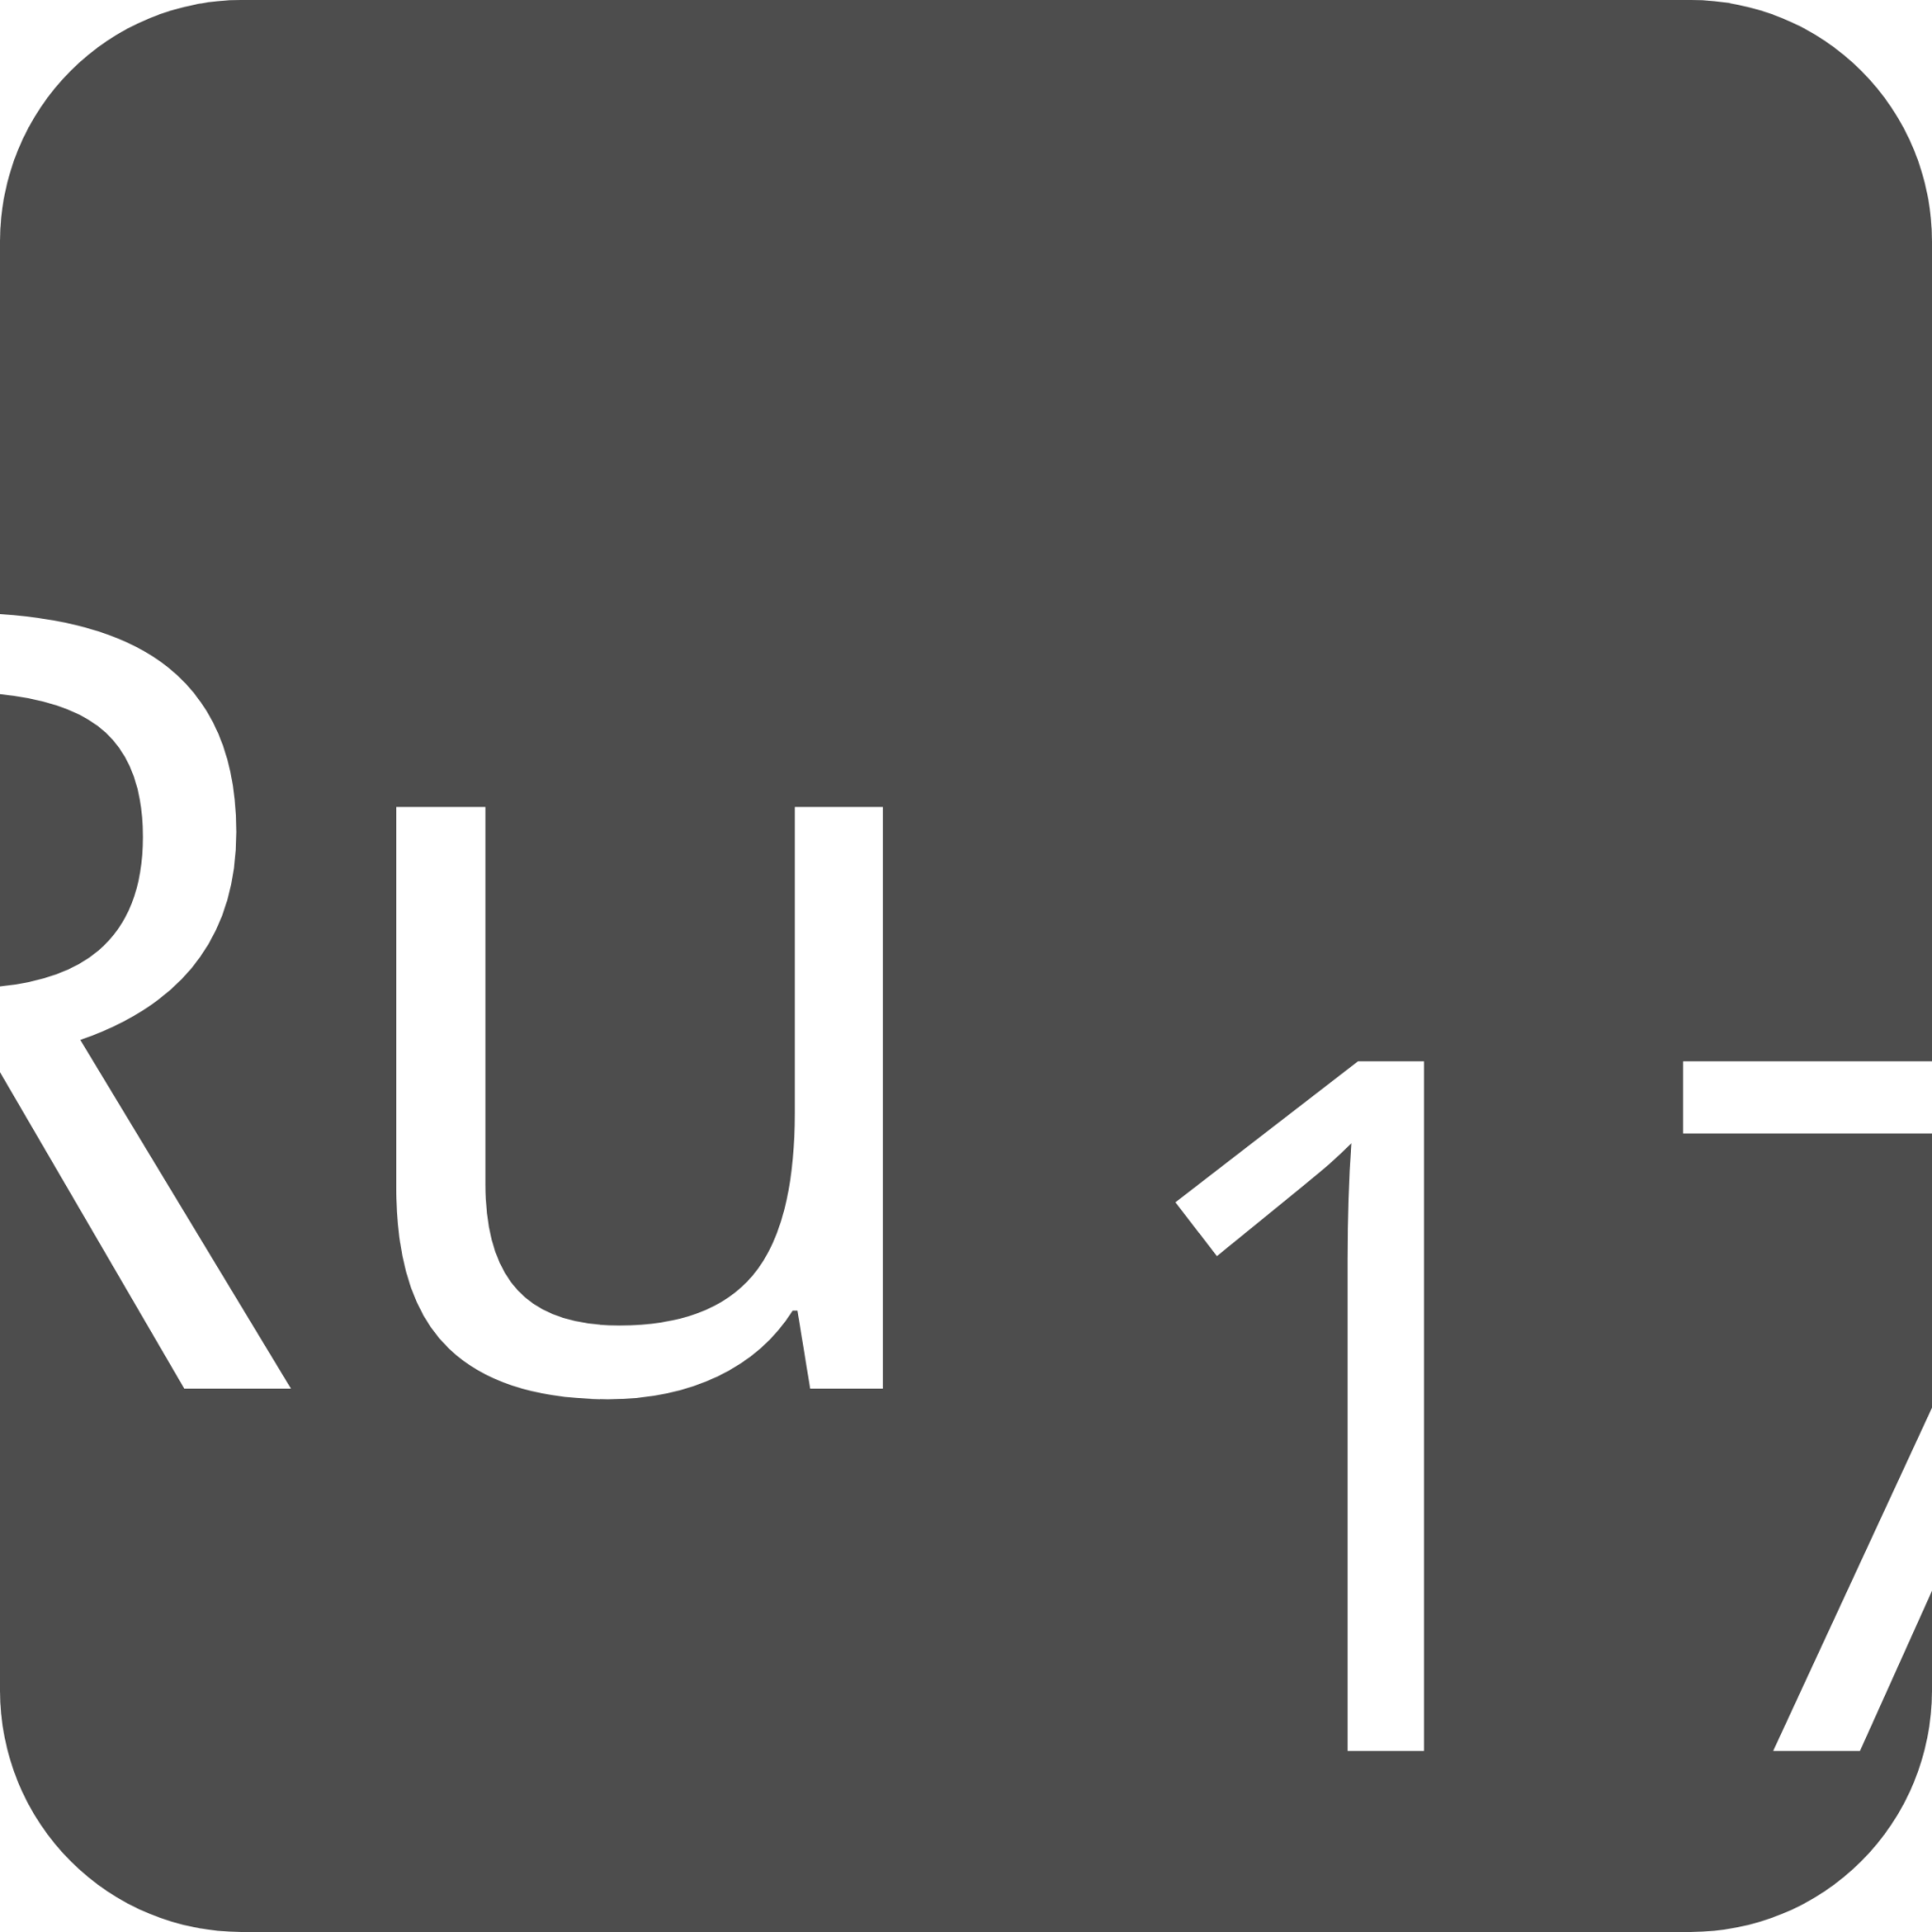 indicator keyboard Ru 17 icon